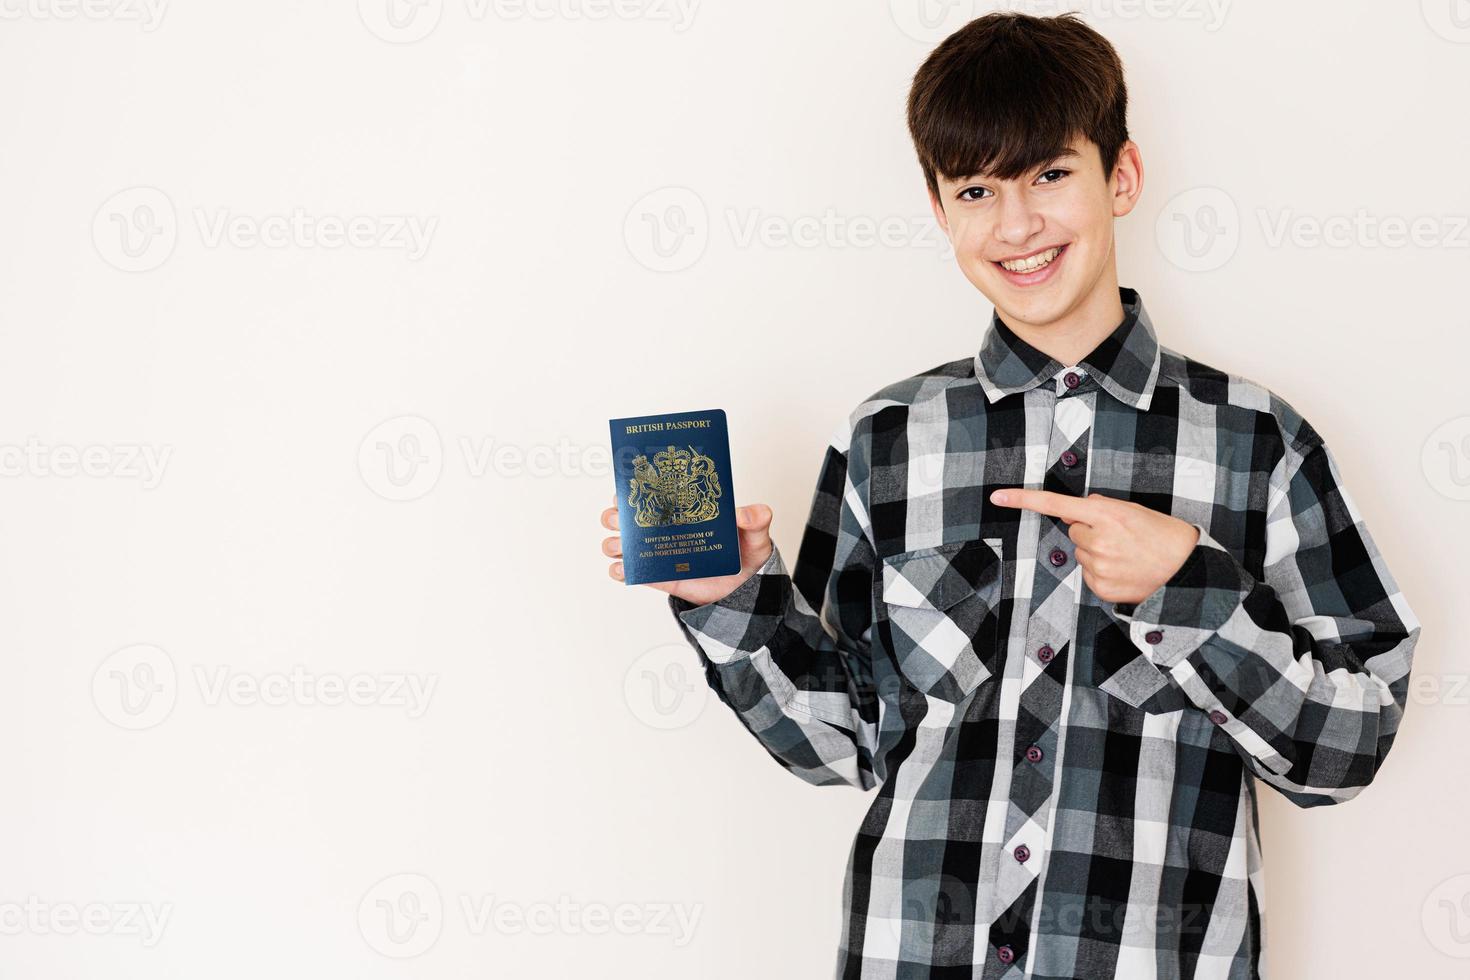 jong tiener jongen Holding Verenigde koninkrijk van Super goed Brittannië en noordelijk Ierland paspoort op zoek positief en gelukkig staand en glimlachen met een zelfverzekerd glimlach tegen wit achtergrond. foto